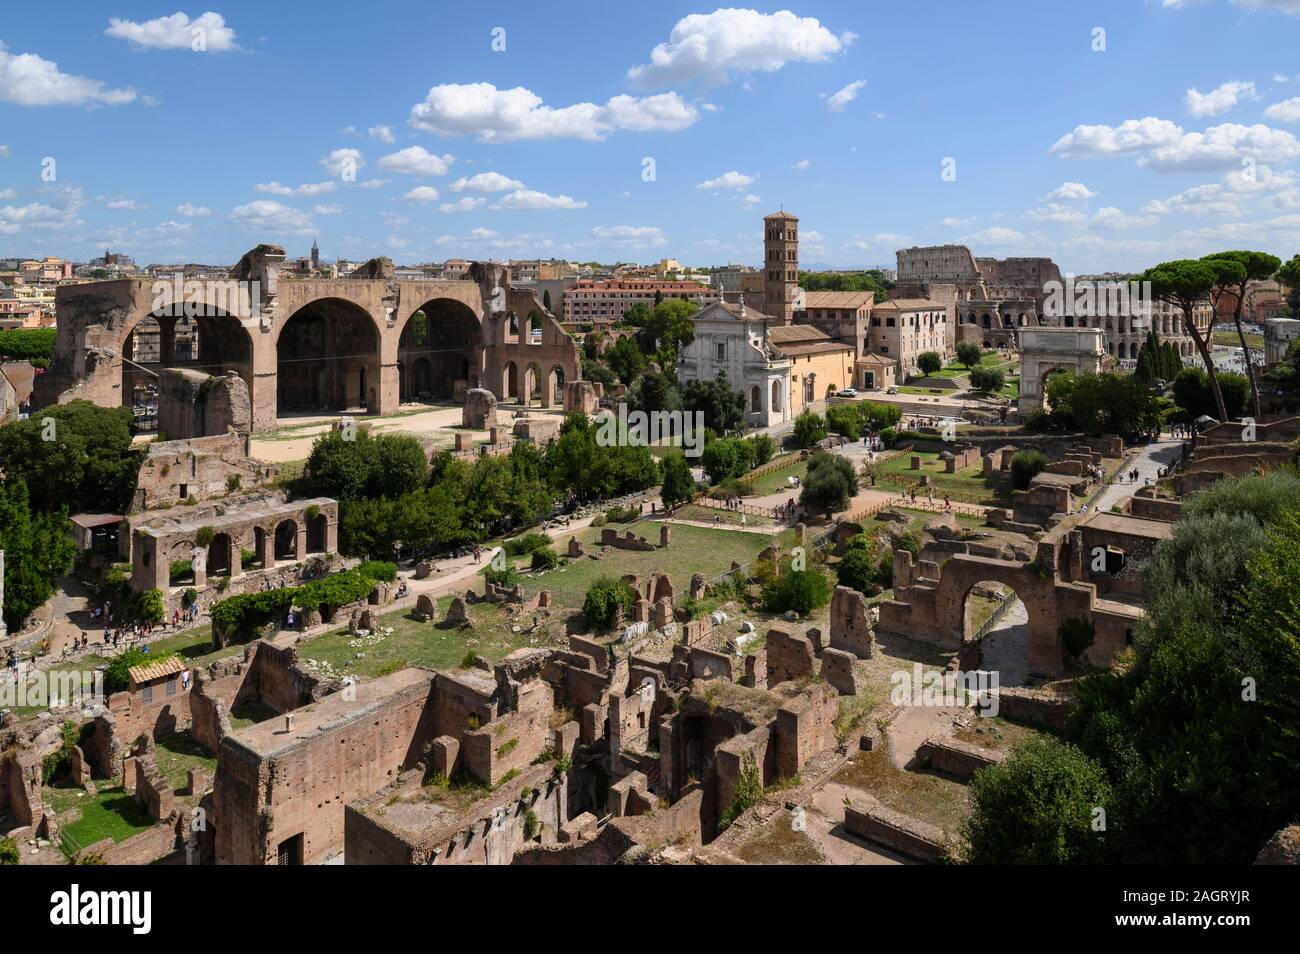 Rom. Italien. Blick auf das Forum Romanum (Forum Romanum/Foro Romano) vom Palatin. Auf der linken Seite ist die Basilika von Maxentius und Konstantin, t Stockfoto